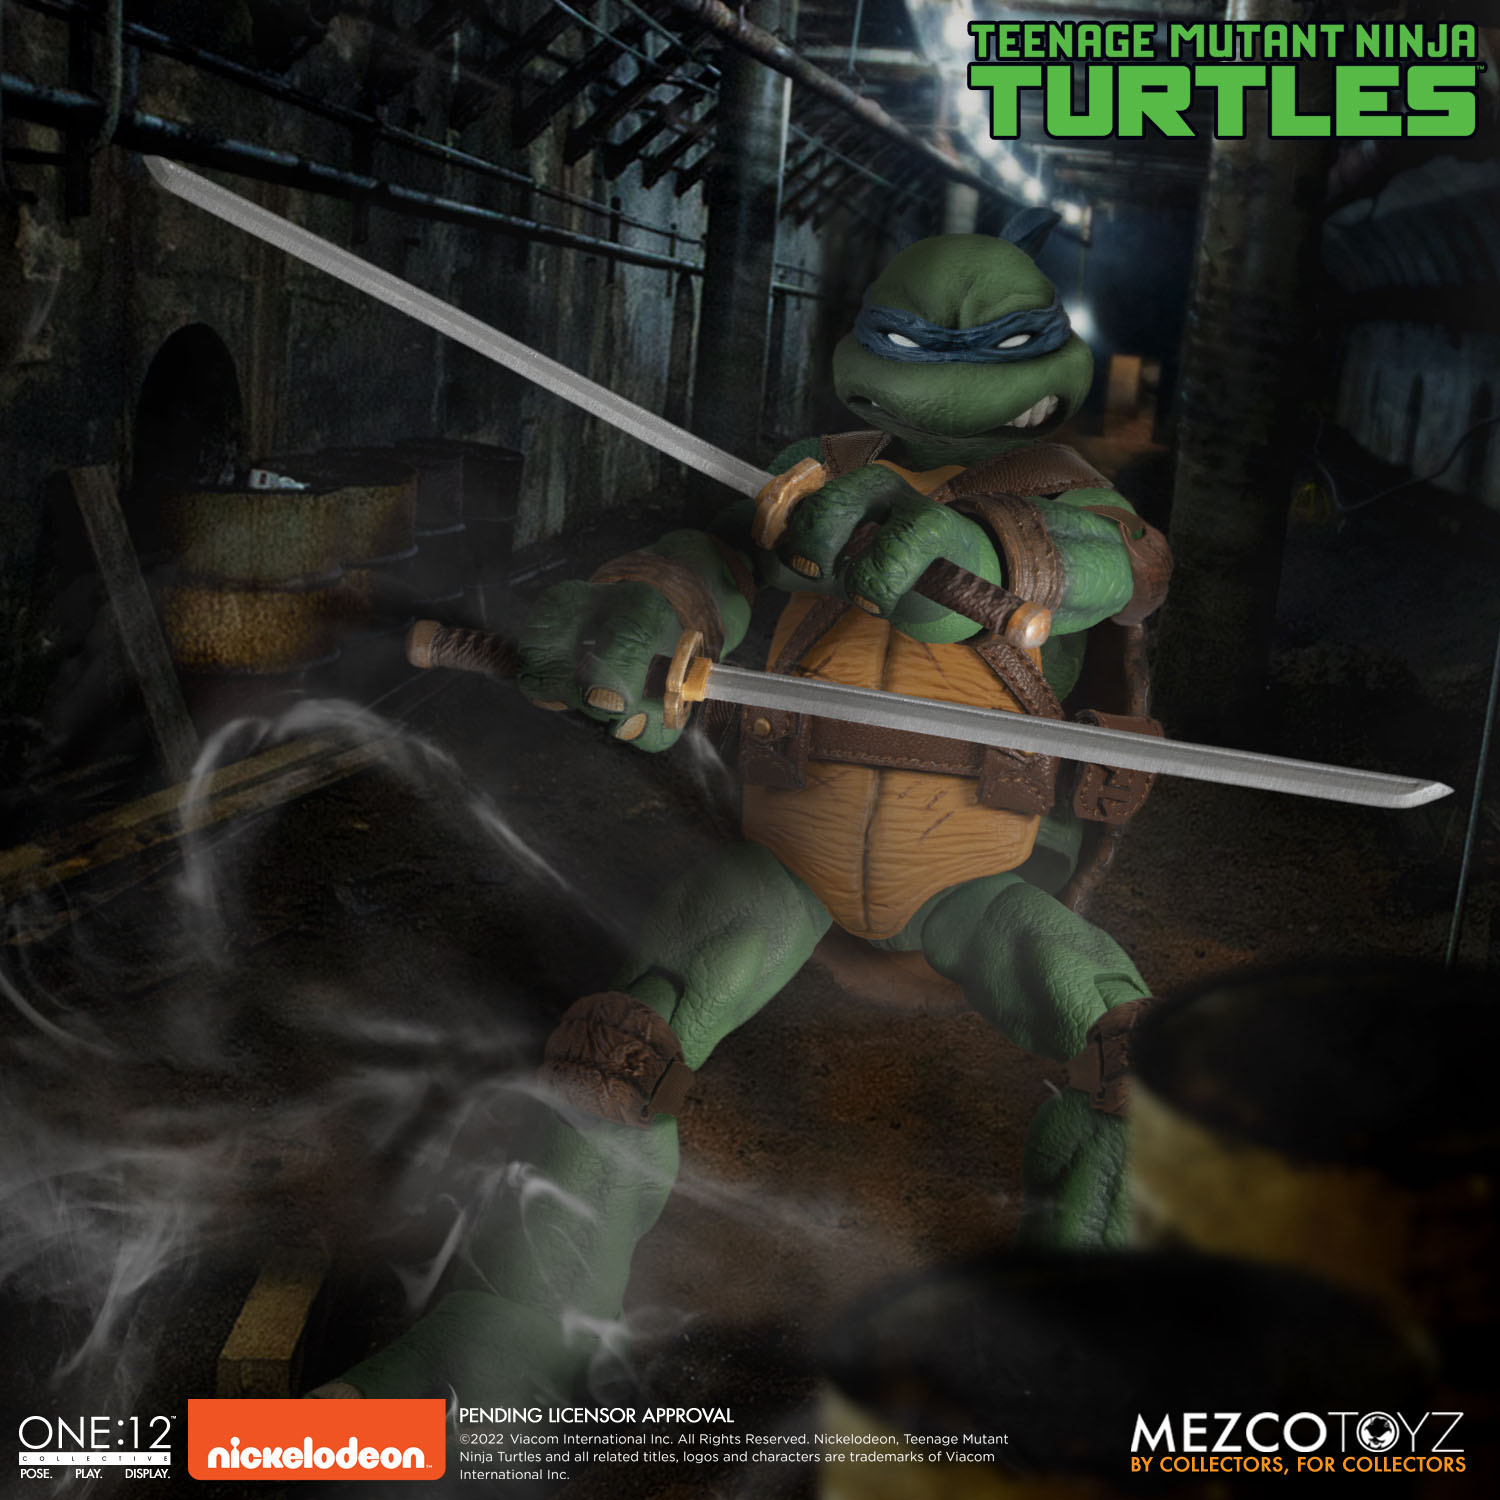 Teenage Mutant Ninja Turtles XL Actionfiguren Deluxe Box Set 17 cm MEZ75514 696198755145